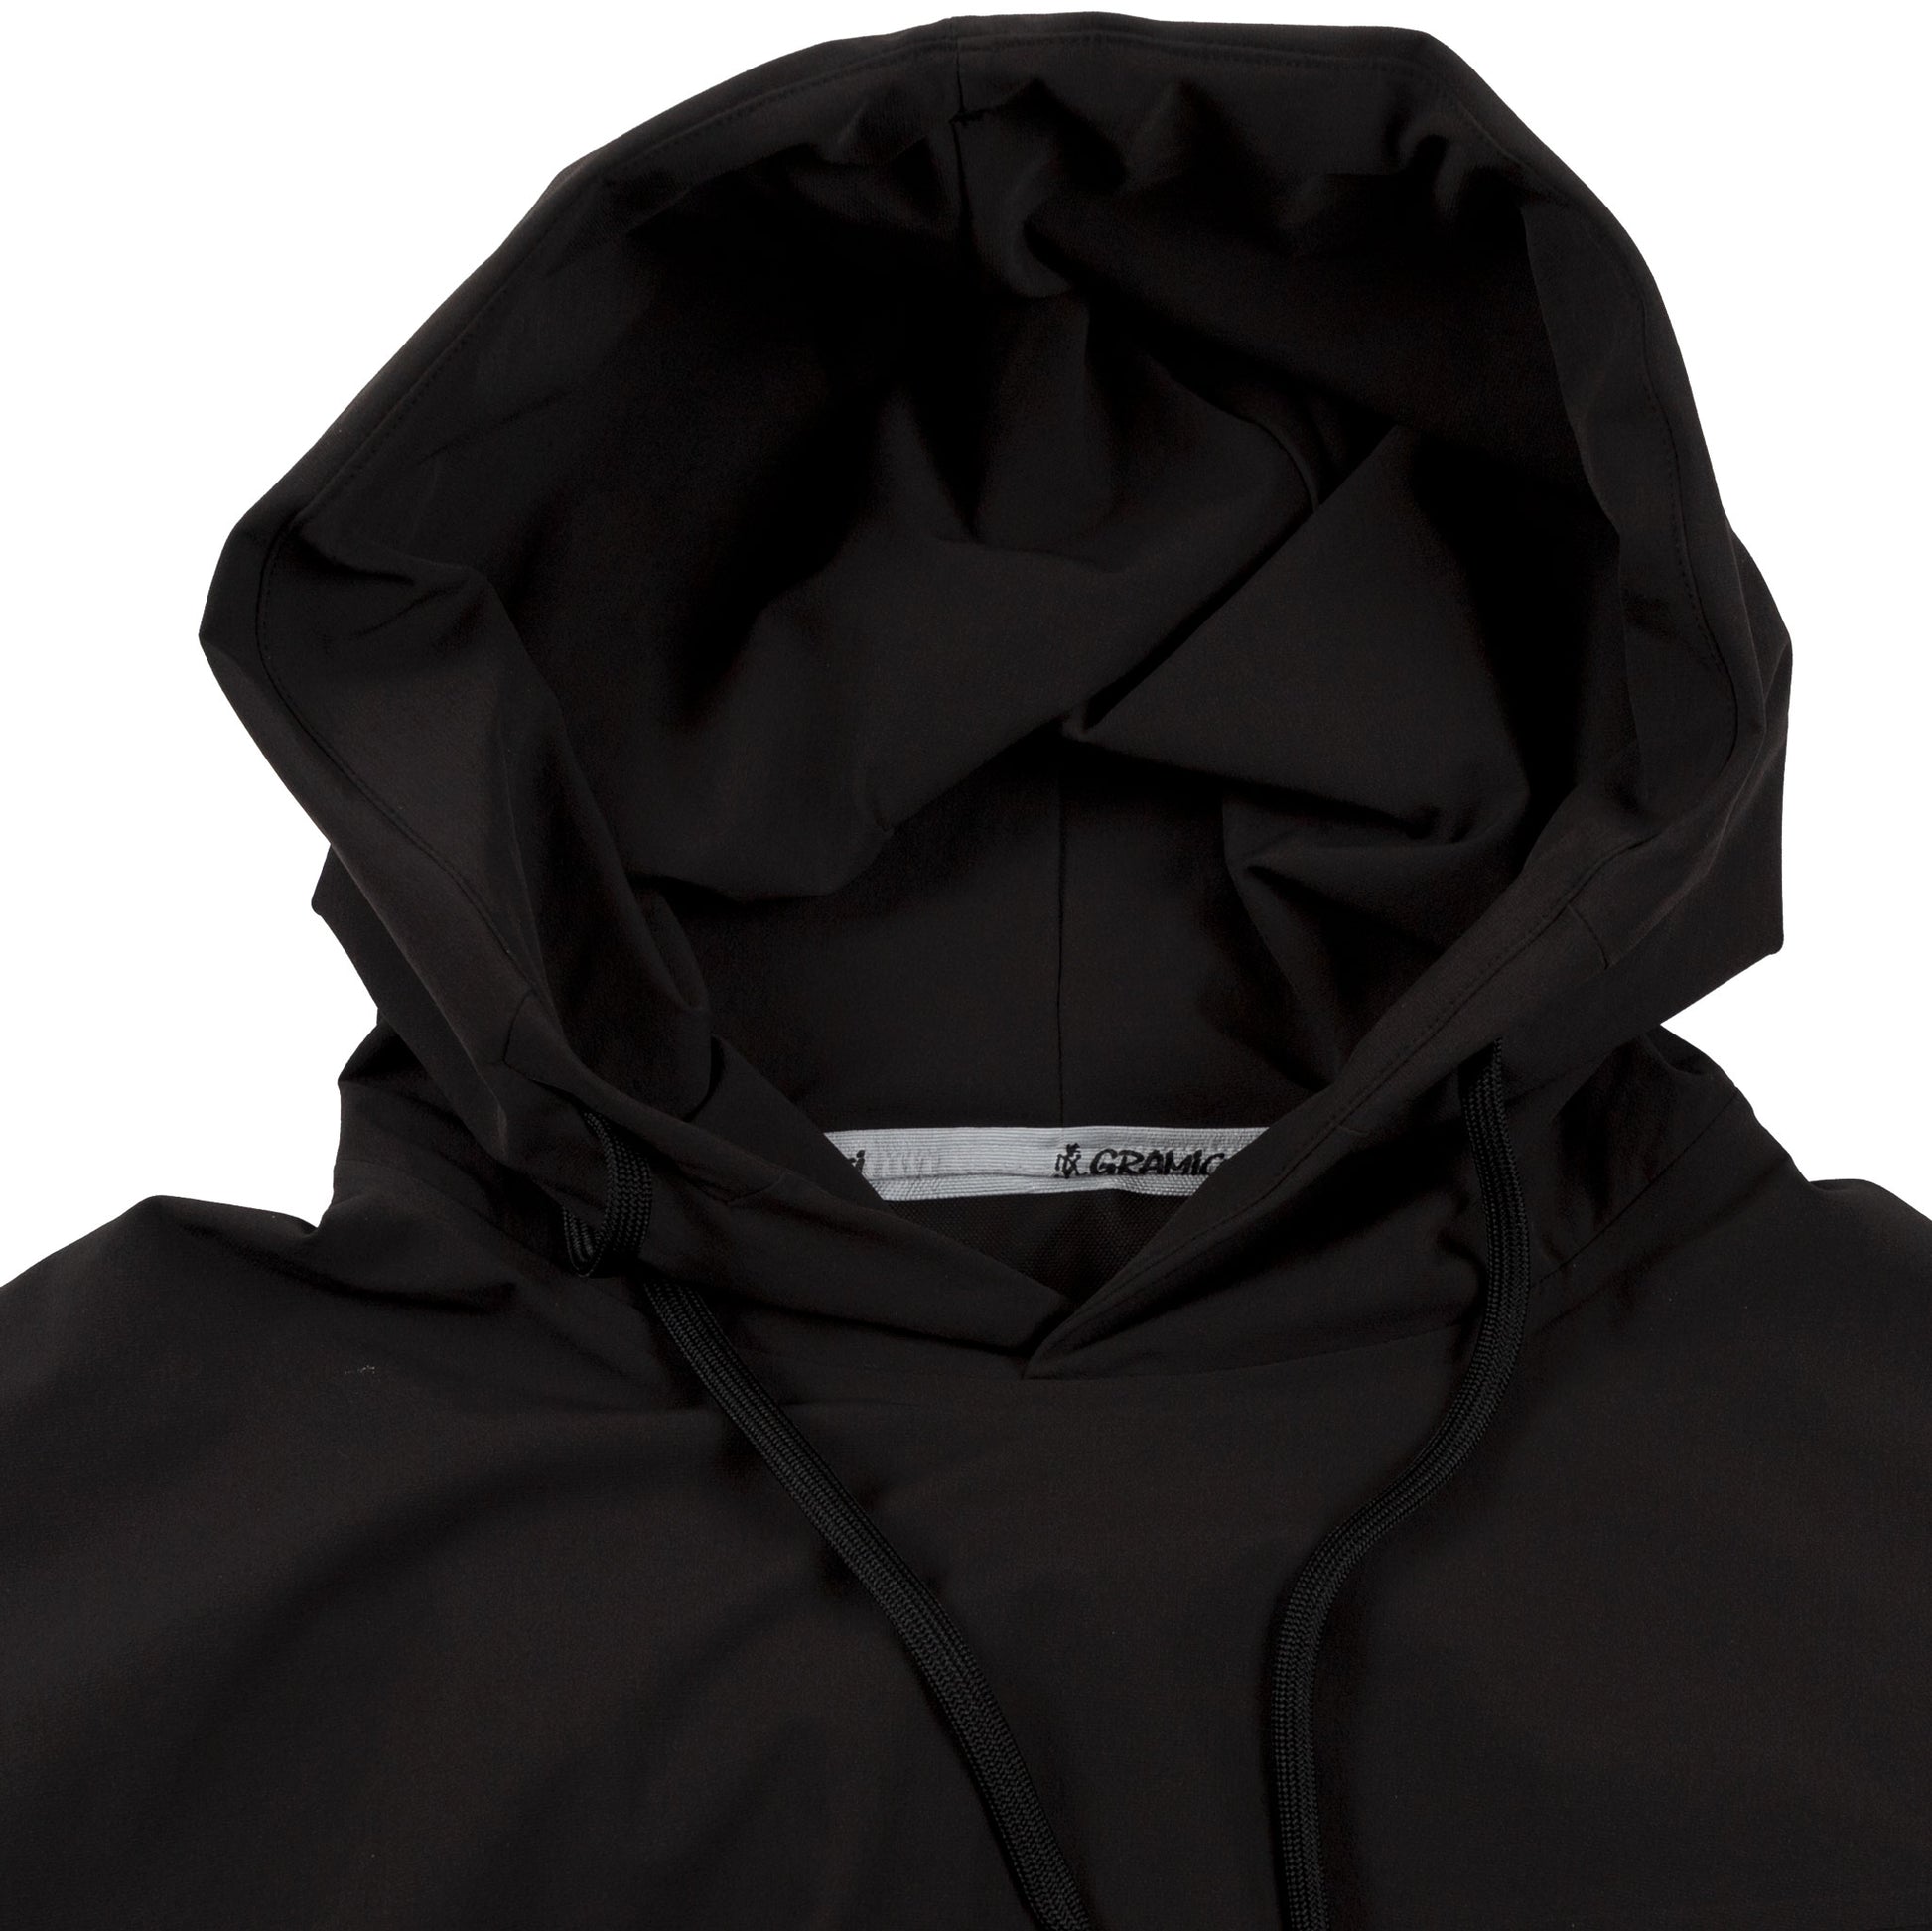 Gramicci Sonora Pertex Hoodie in Black all weather weatherproof outer wear hood